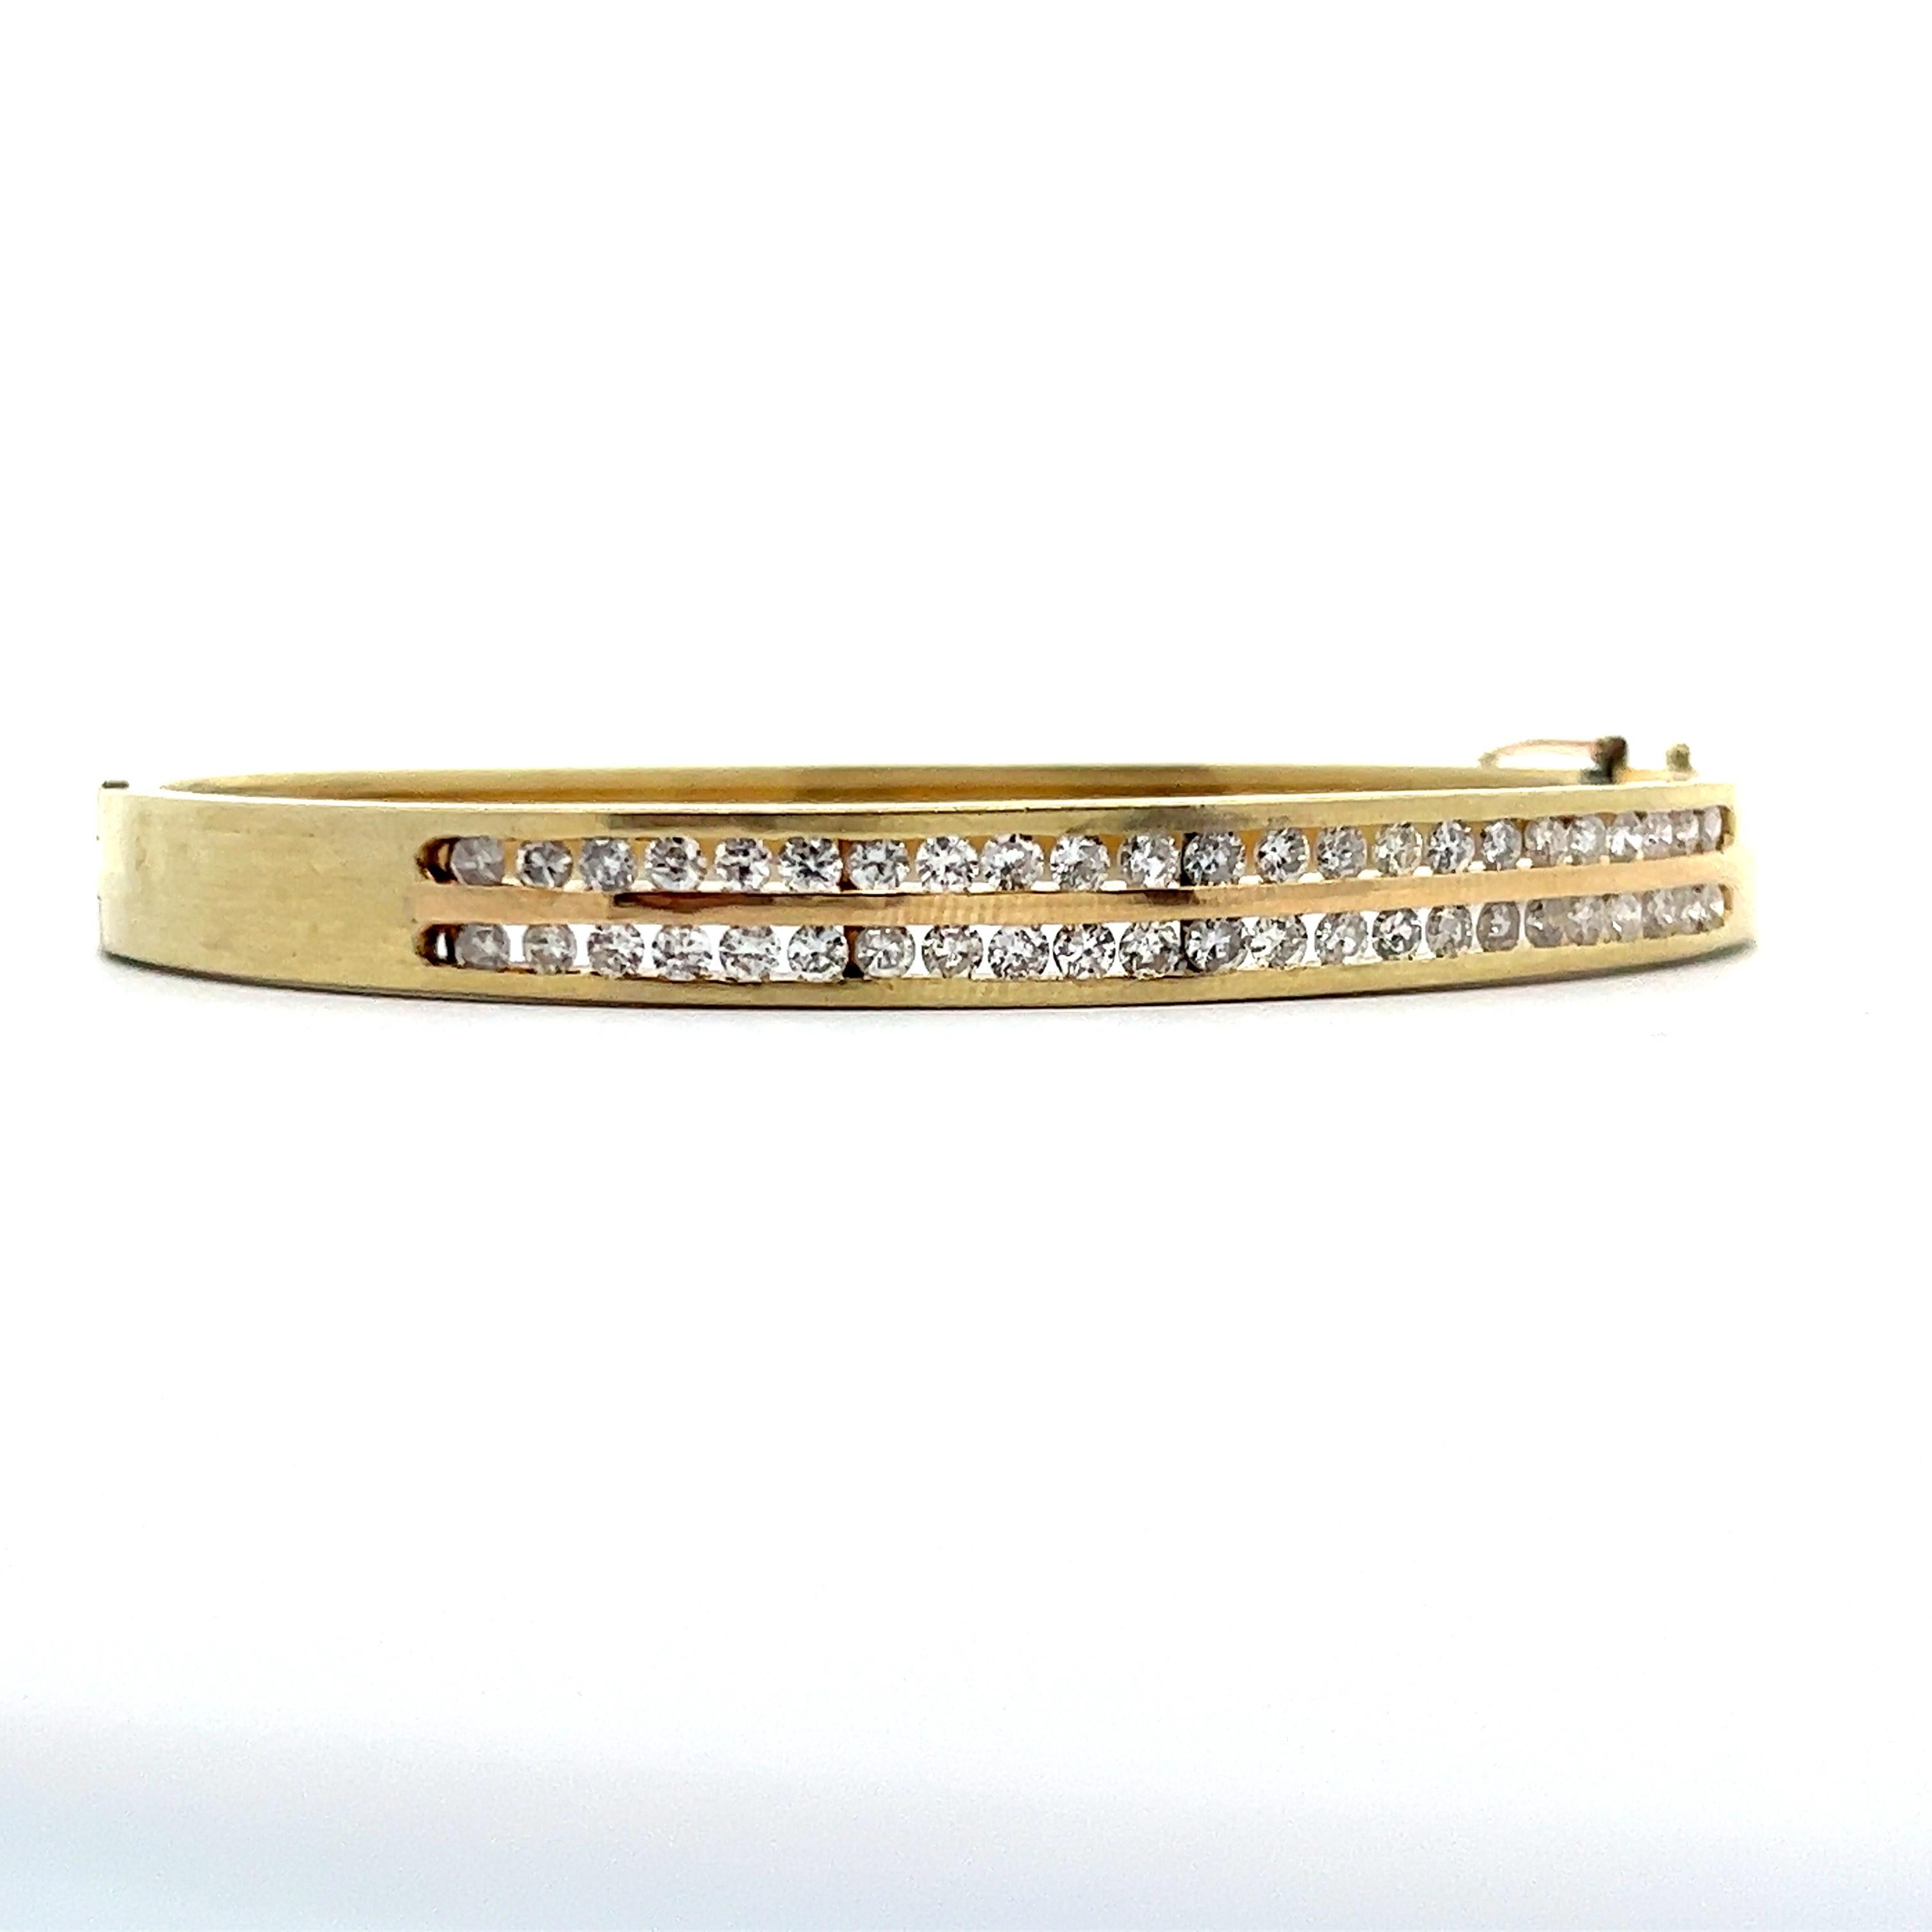 Il s'agit d'un magnifique bracelet en or jaune 14k avec deux rangées de diamants. Ce bracelet présente un design unique, les deux rangées de diamants étant serties en canal et uniquement d'un côté du bracelet. Cette conception permet de protéger les